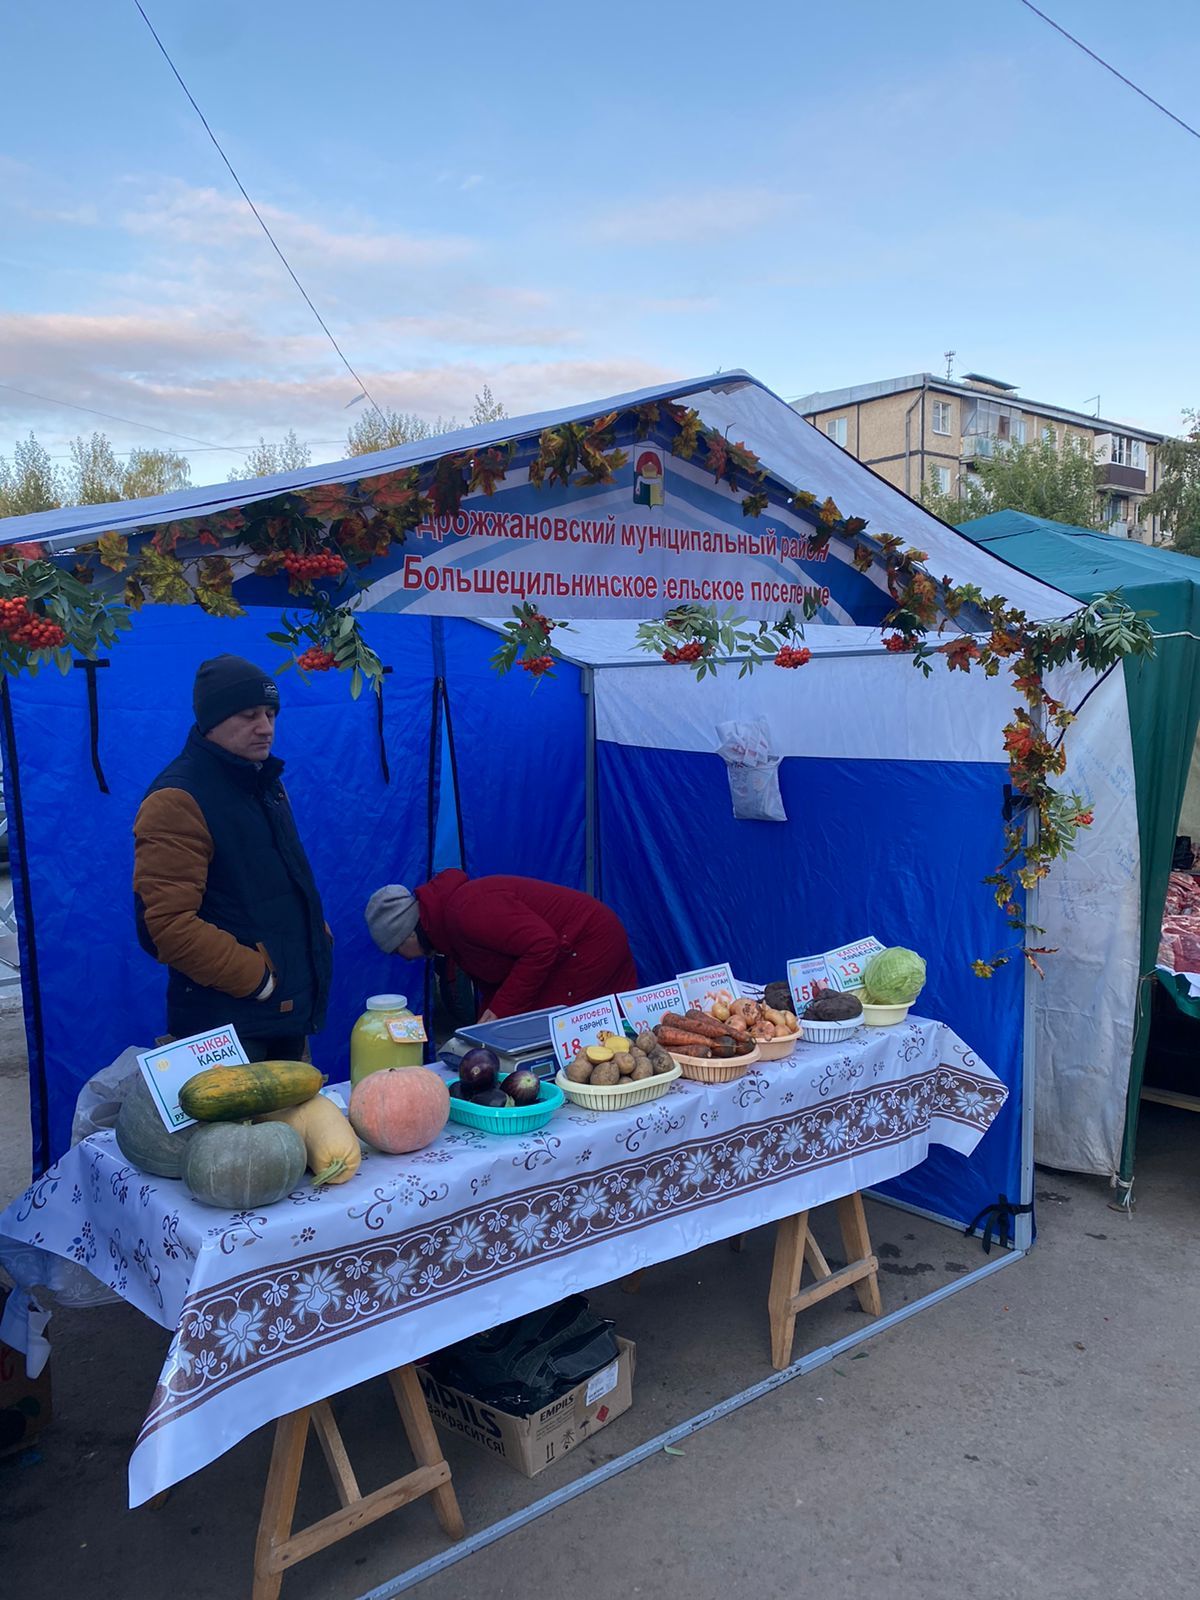 Дрожжановцы представляют свою сельхозпродукциию на ярмарке в Казани